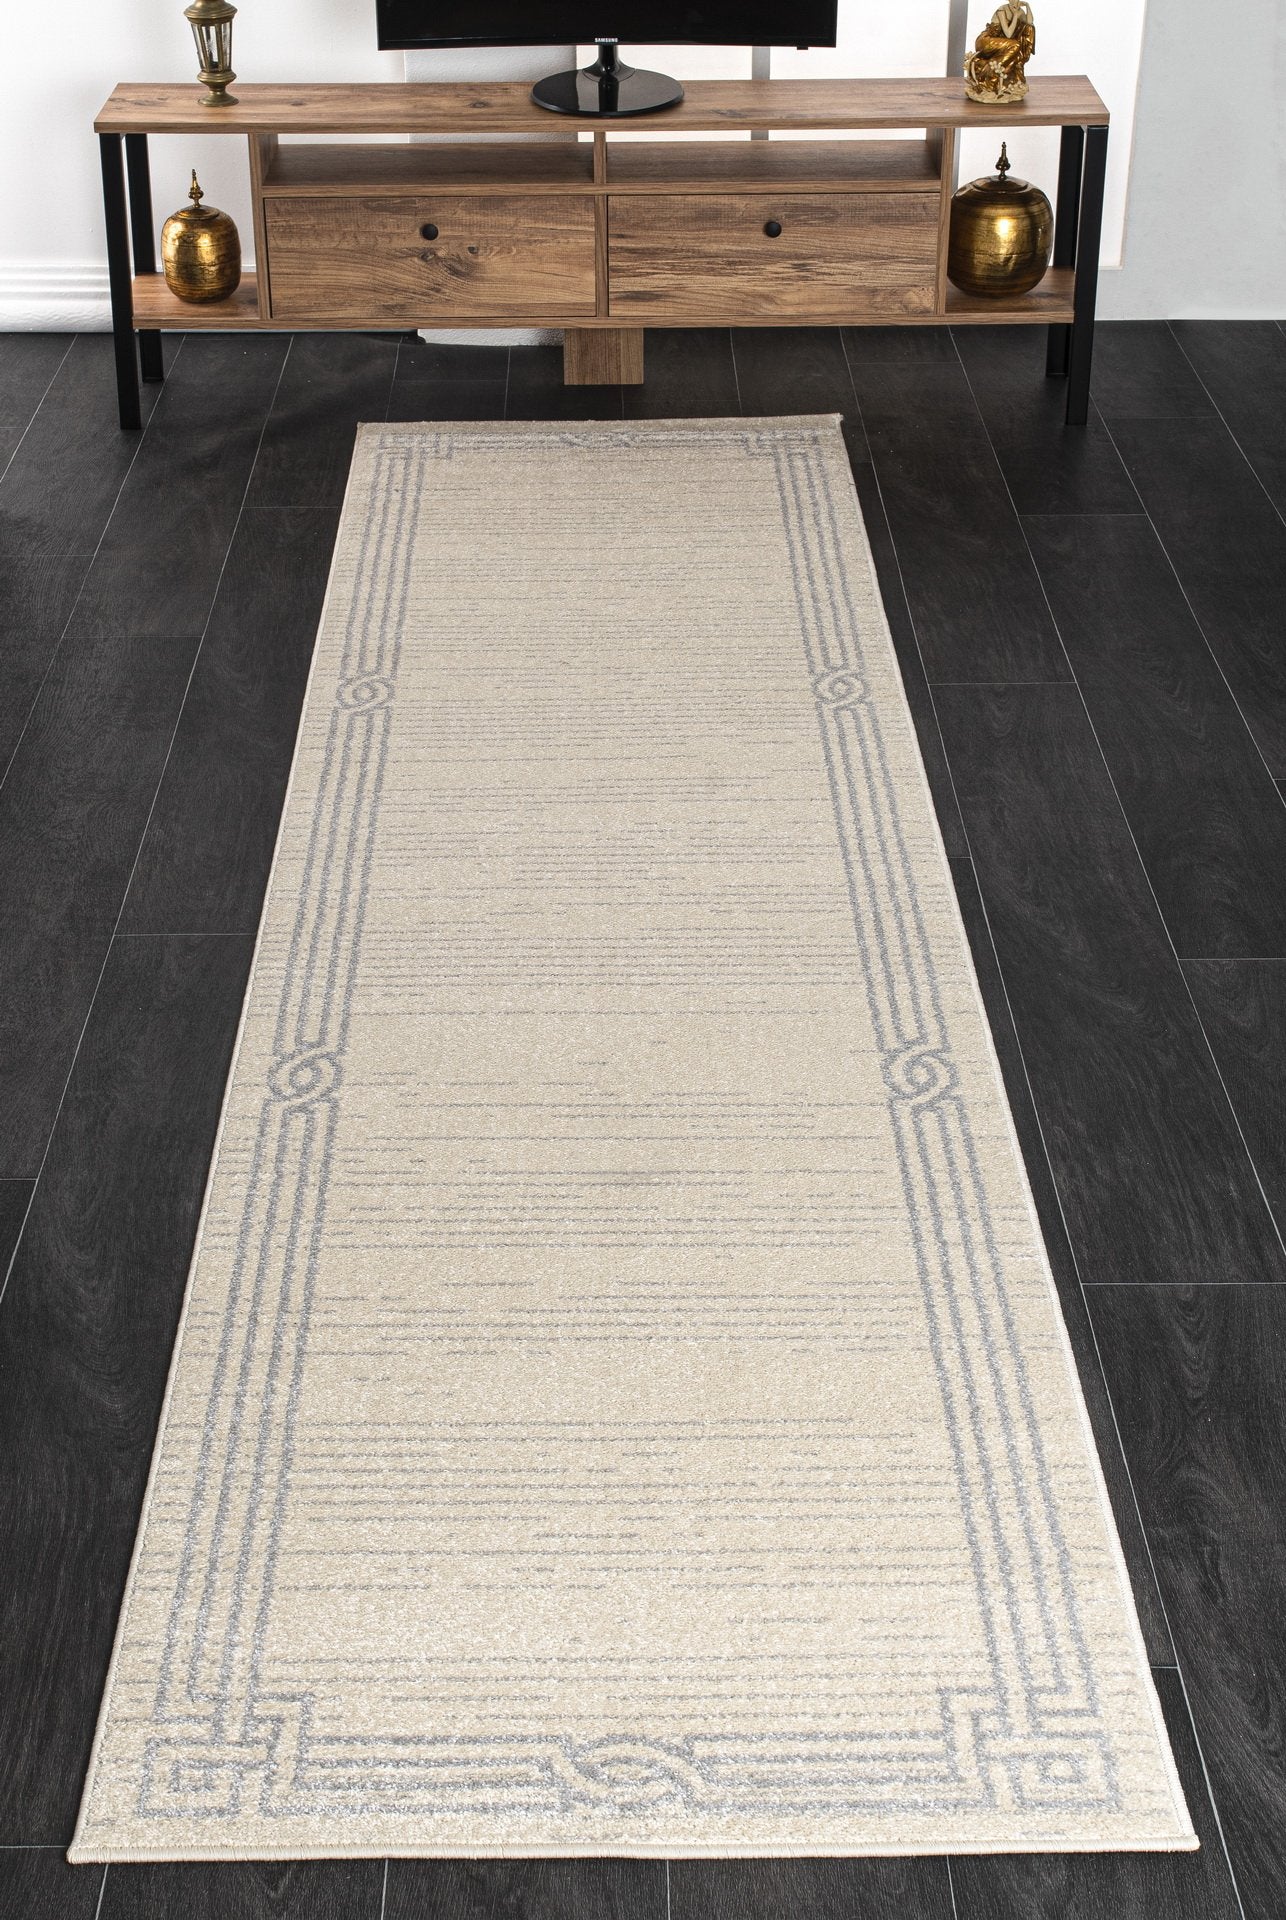 modern ivory grey bordered area rug 8x10, 8x11 ft Large Living Room Carpet, Bedroom, Kitchen